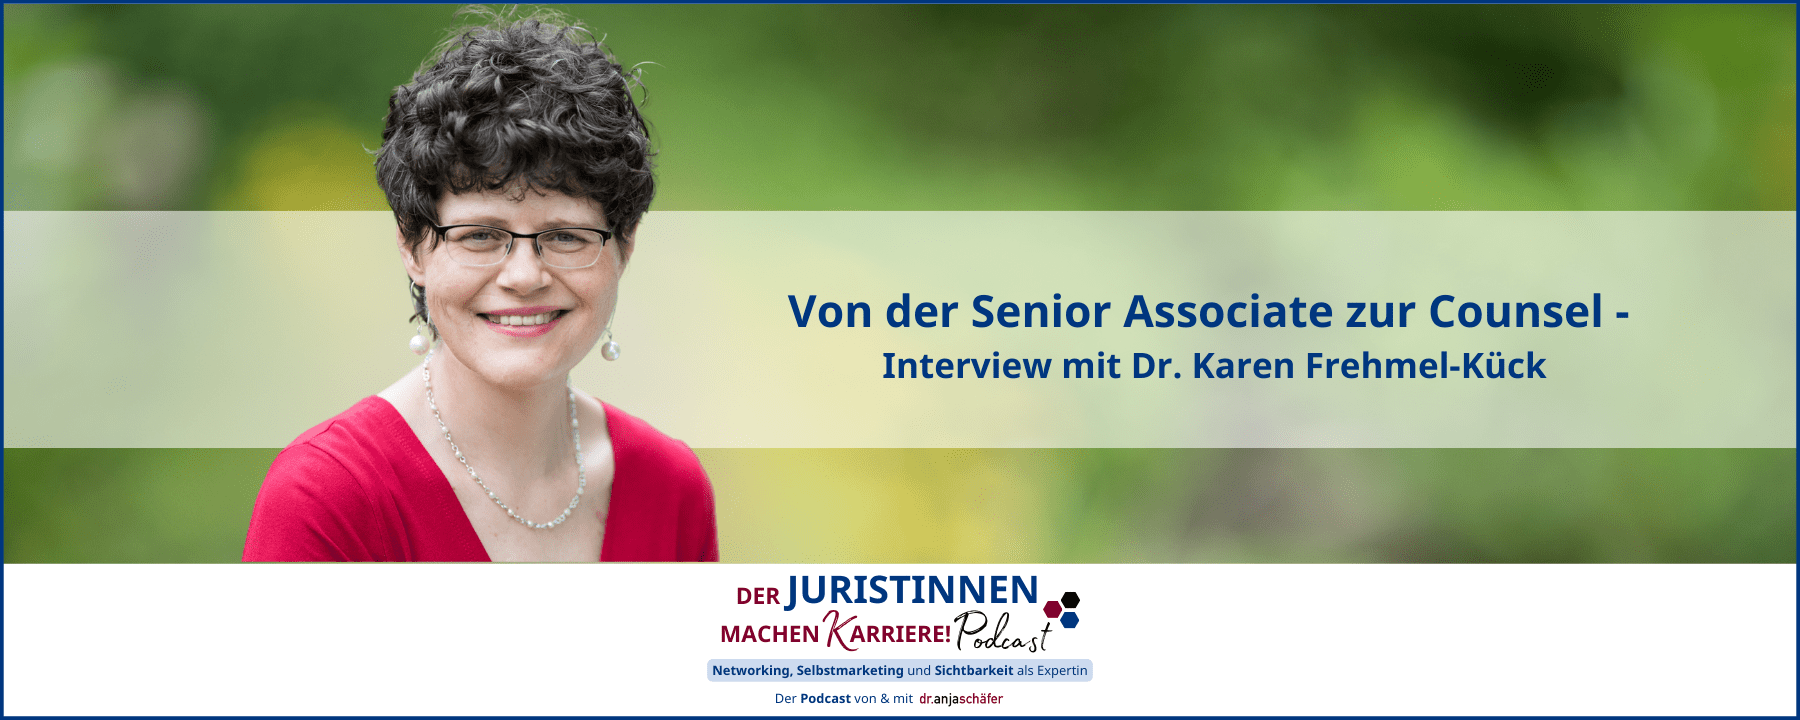 Von der Senior Associate zur Counsel-Interview mit Dr. Karen Frehmel-Kück